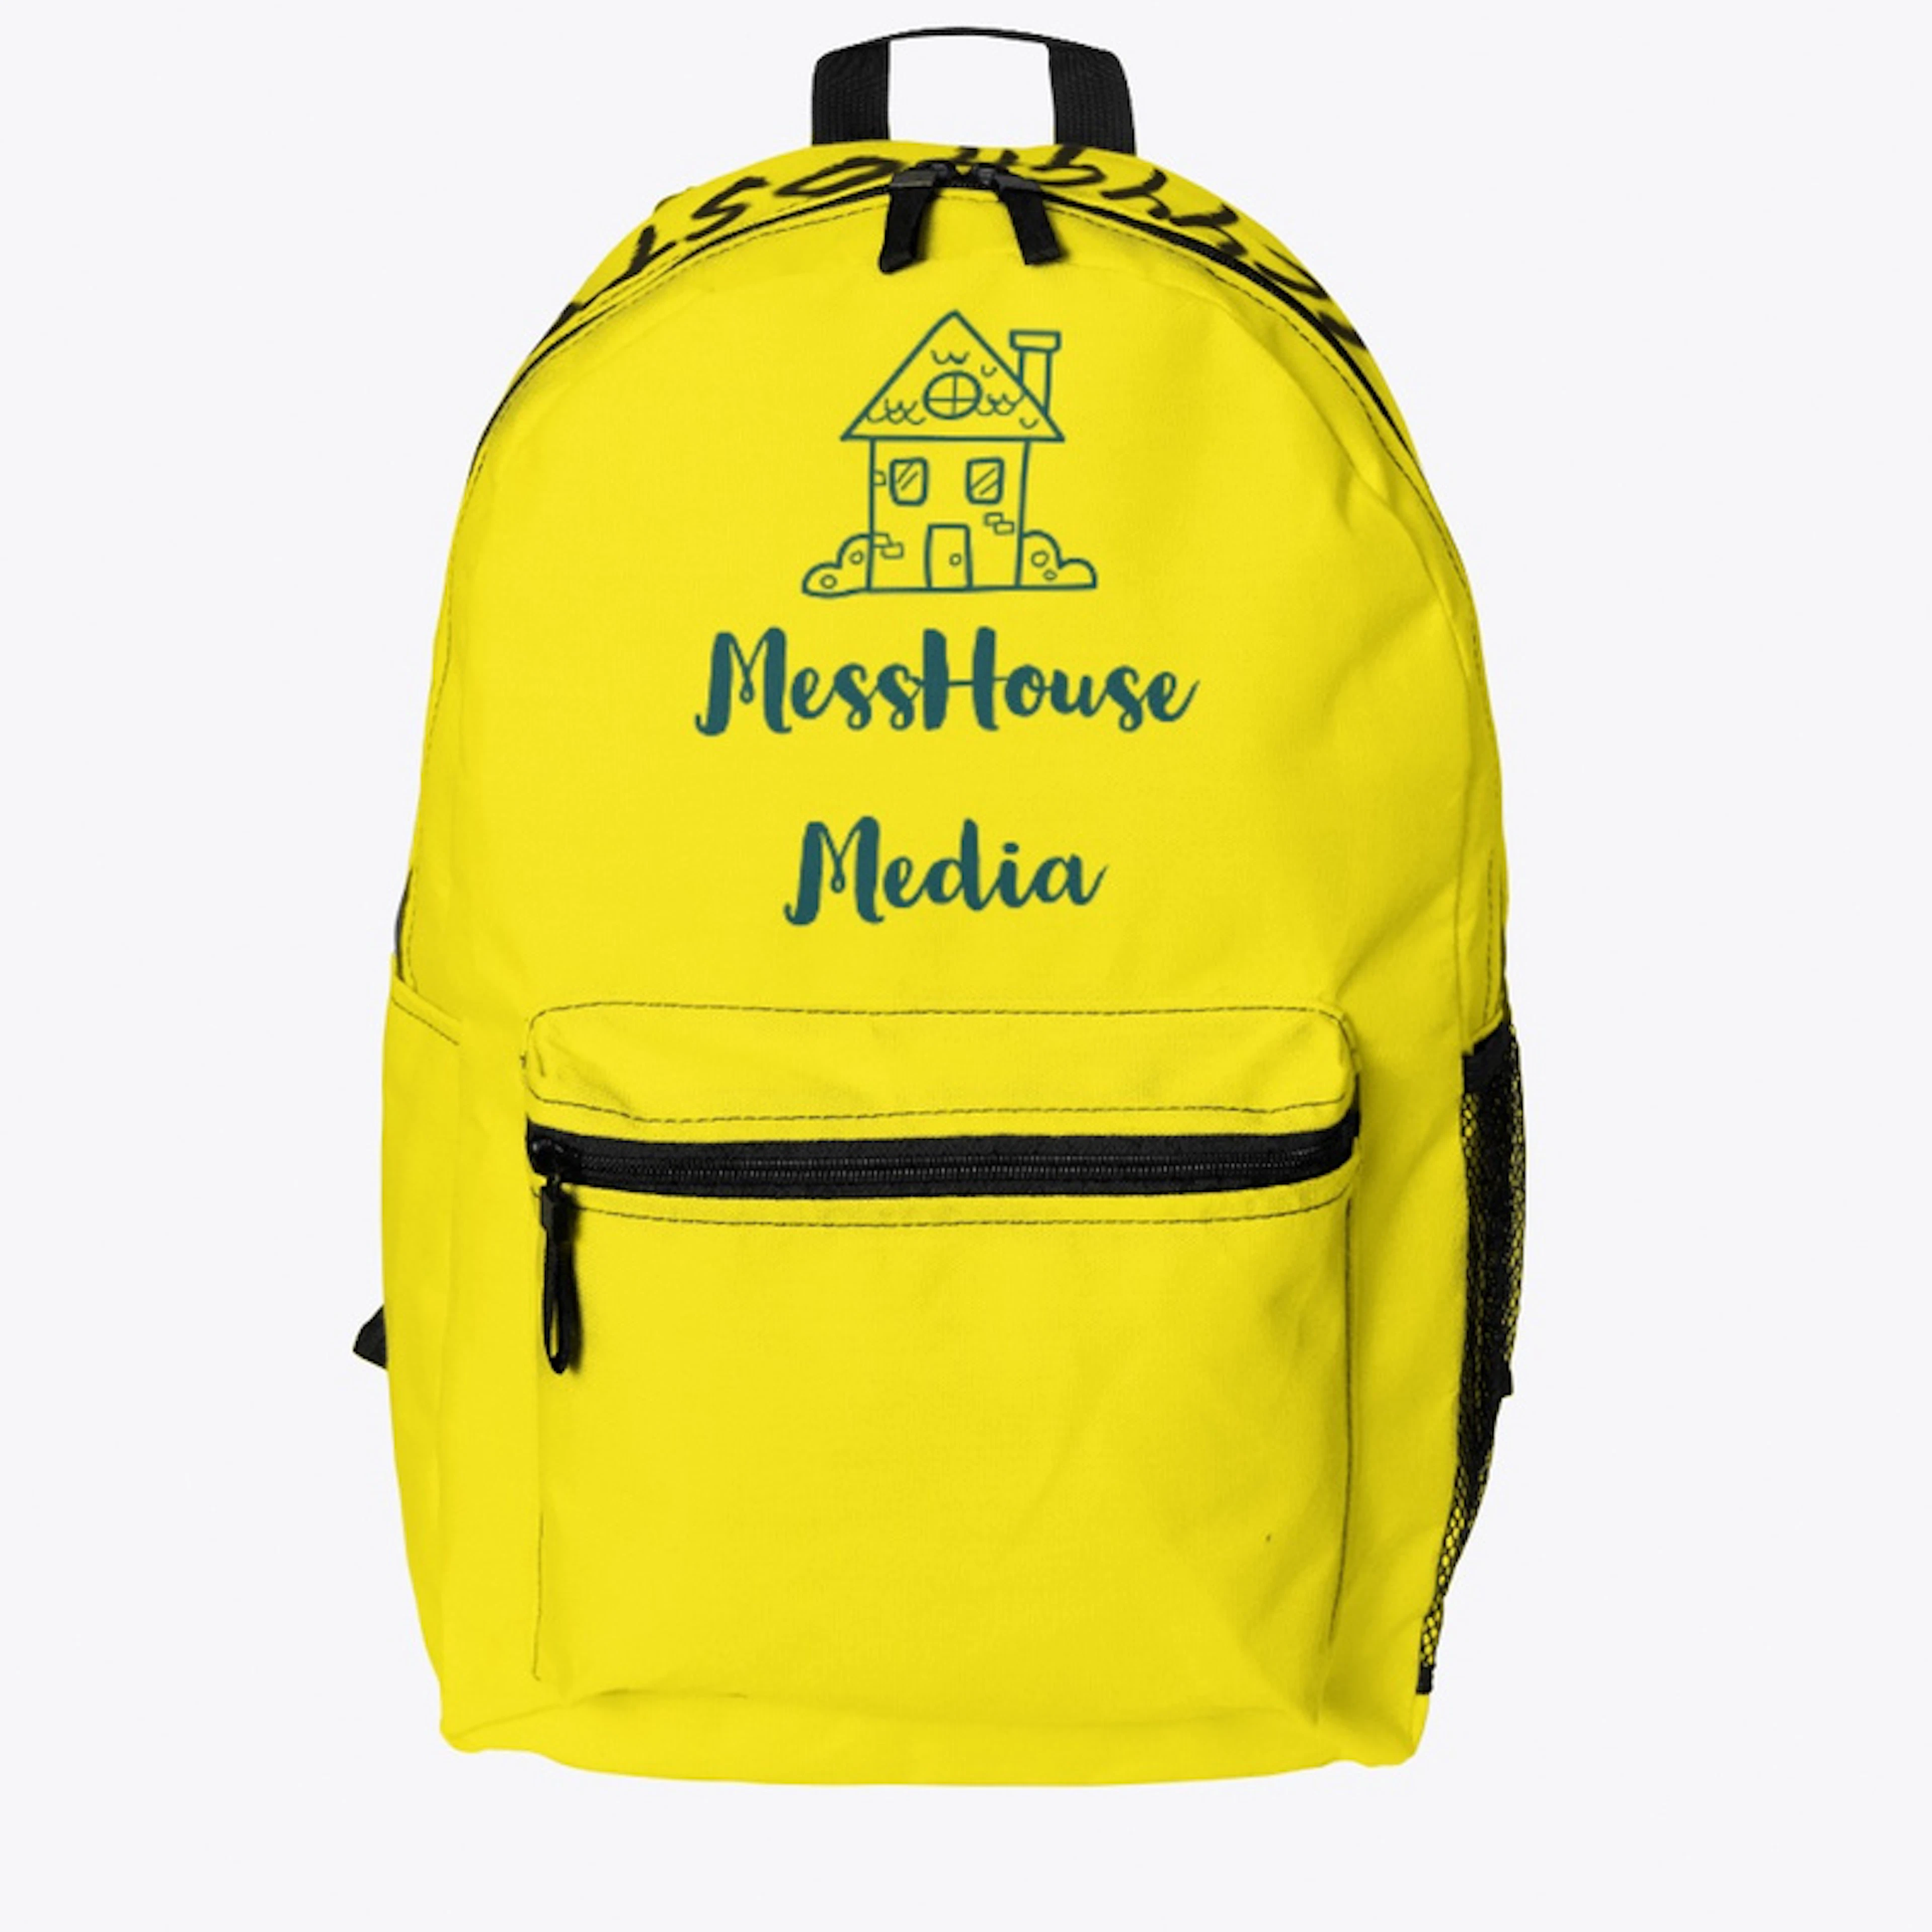 MessHouse/Icyyghosts Backpack 